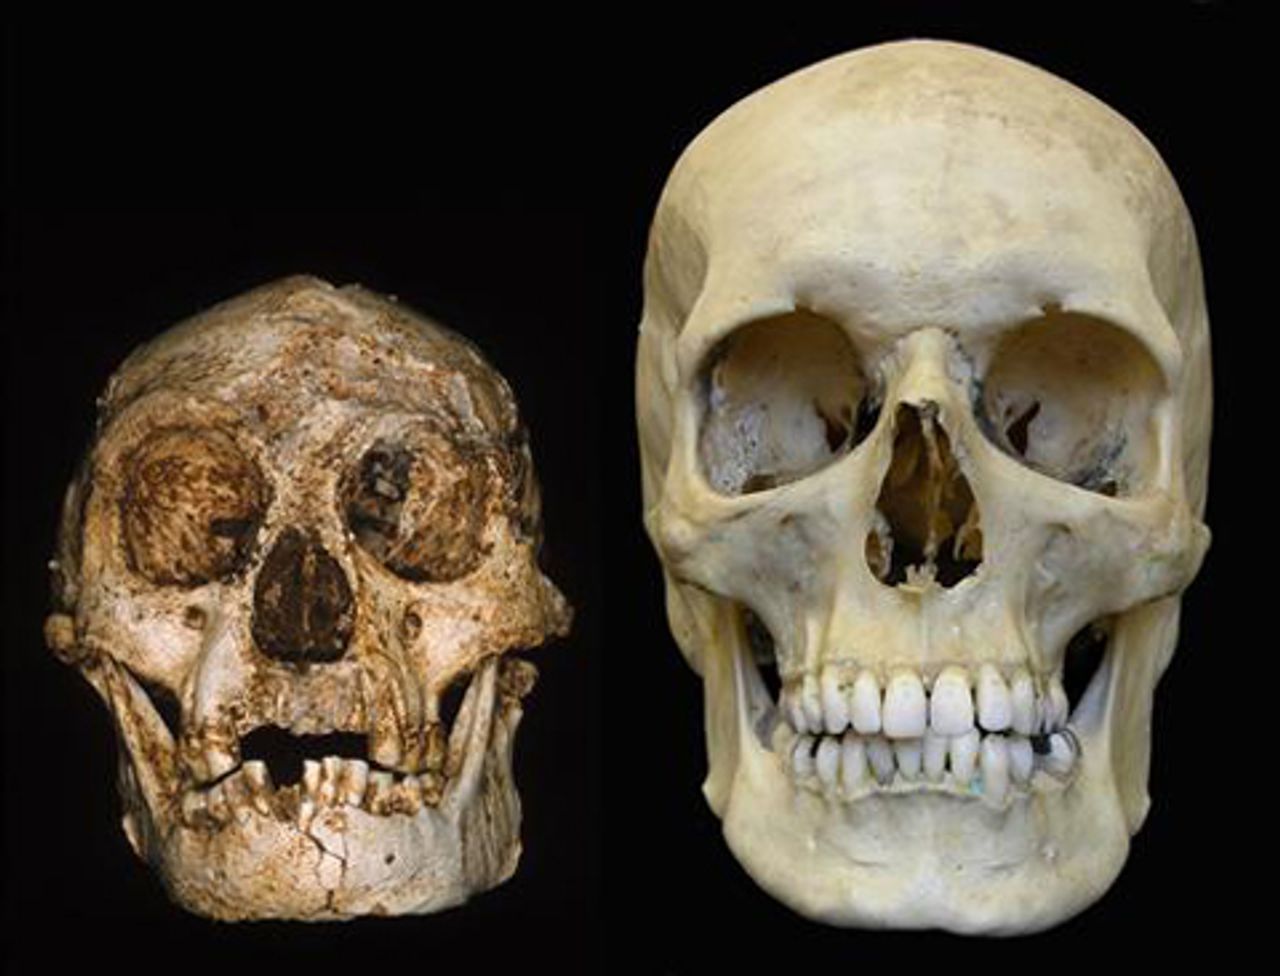 LB1 Hobbit skull compared to a modern human skull